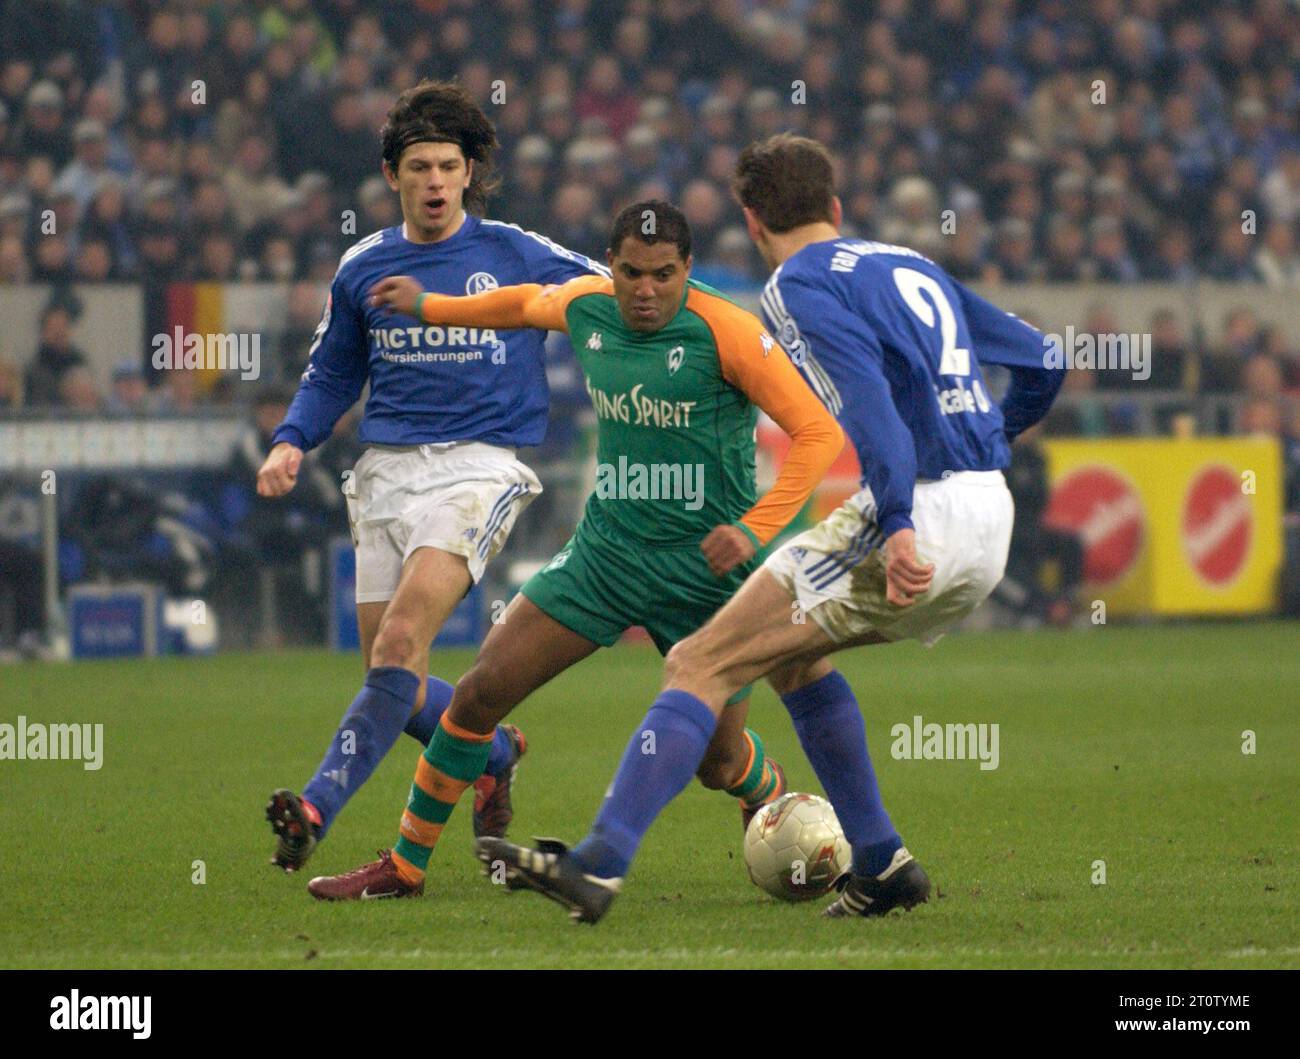 Gelsenkirchen Deutschland, 21.2.2004 Fußball: Bundesligasaison 2003/04, Schalke 04 (S04, blau) vs Werder Bremen (WBR, grün) 0:0 — von links: Kobiashvili (S04), Ailton (WBR), Van Kerkhoven (S04) Stockfoto